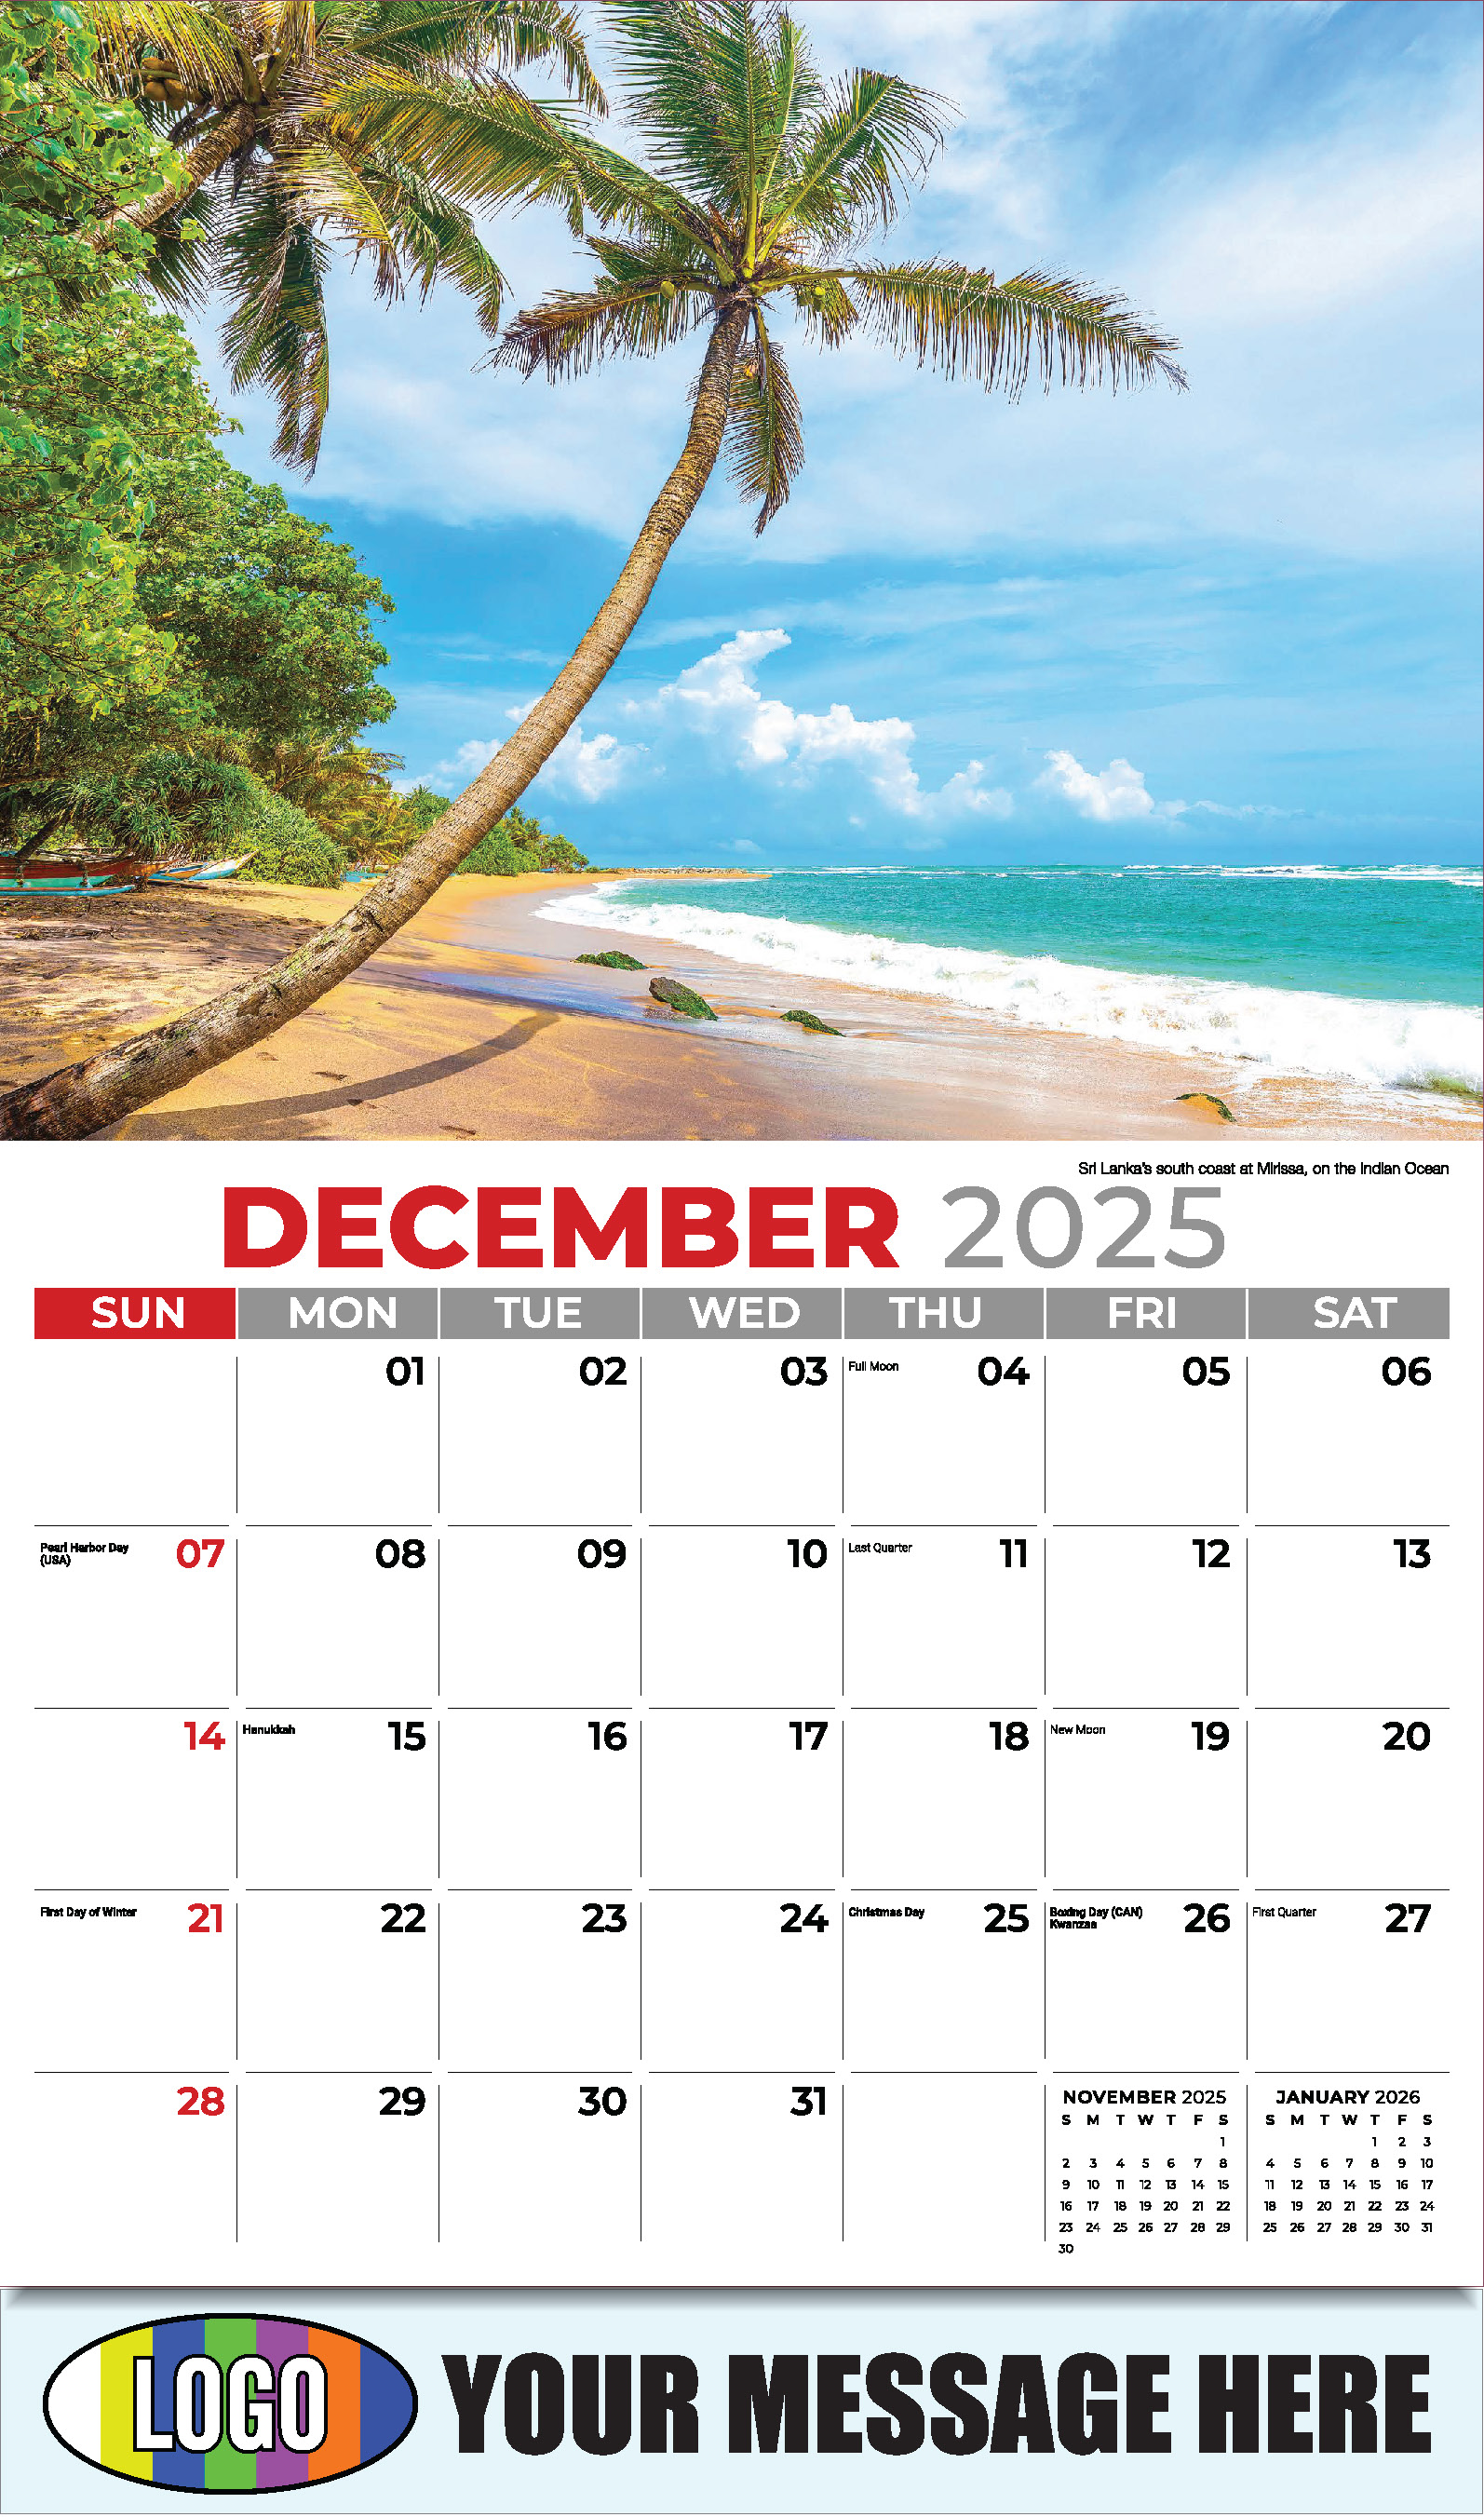 Sun, Sand and Surf 2025 Business Advertsing Wall Calendar - December